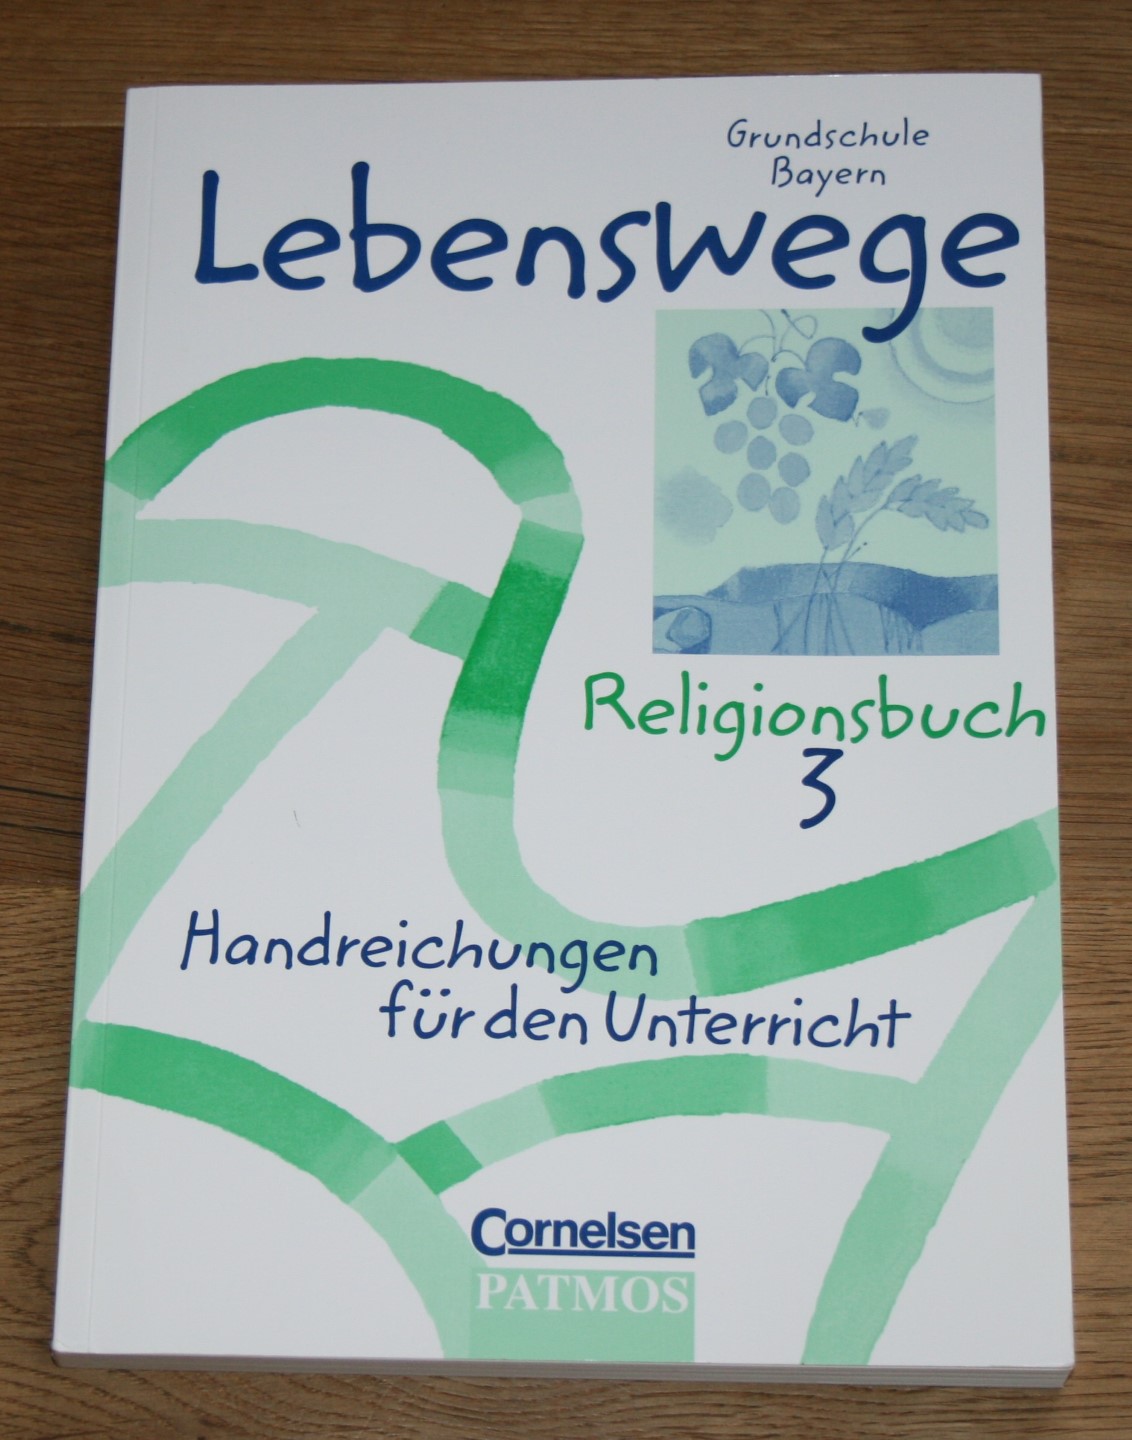 Lebenswege. Religionsbuch 3. Grundschule Bayern. [Handreichungen für den Unterricht, mit Kopiervorlagen] 1. Aufl., 1. Druck. - Frisch, Hermann-Josef